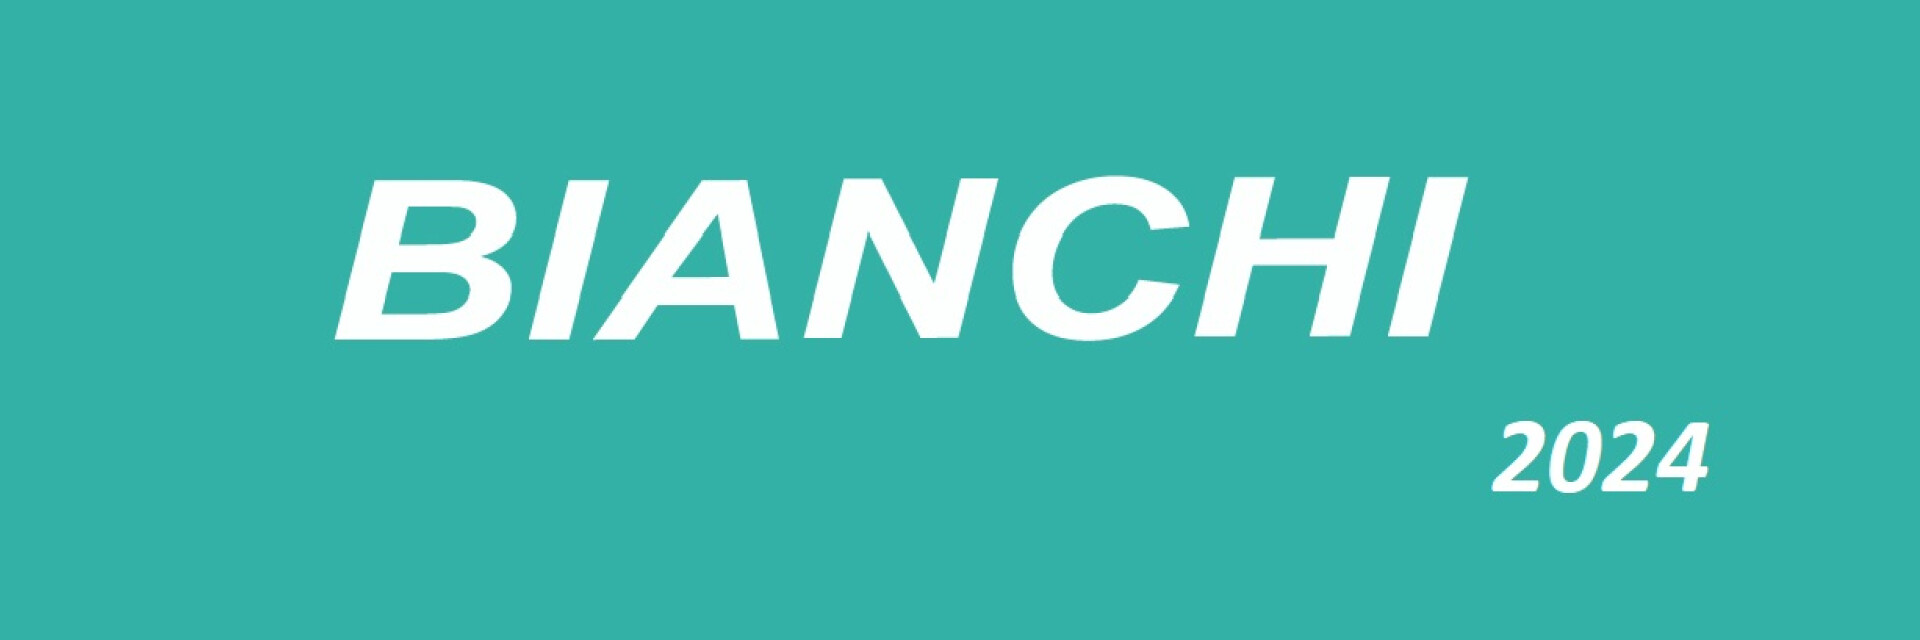 Bianchi Shop 2024